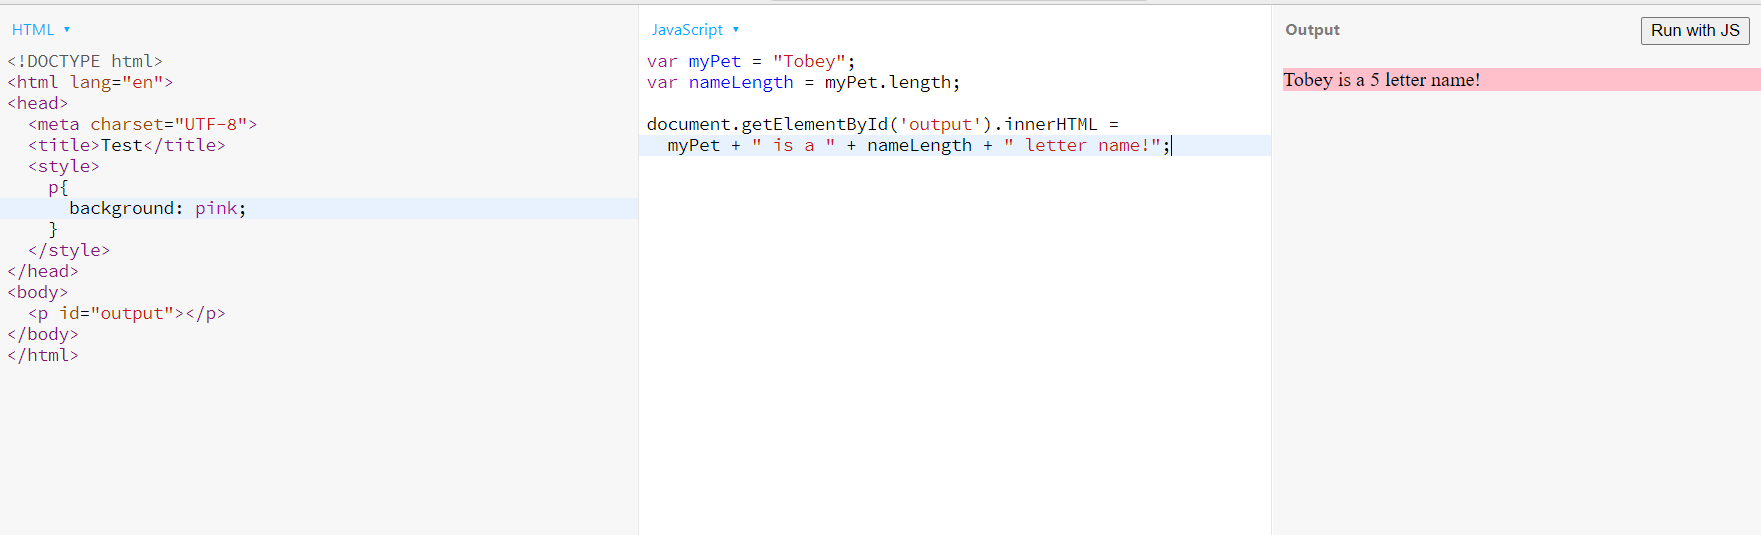 用户在 html 中定义的 js 变量